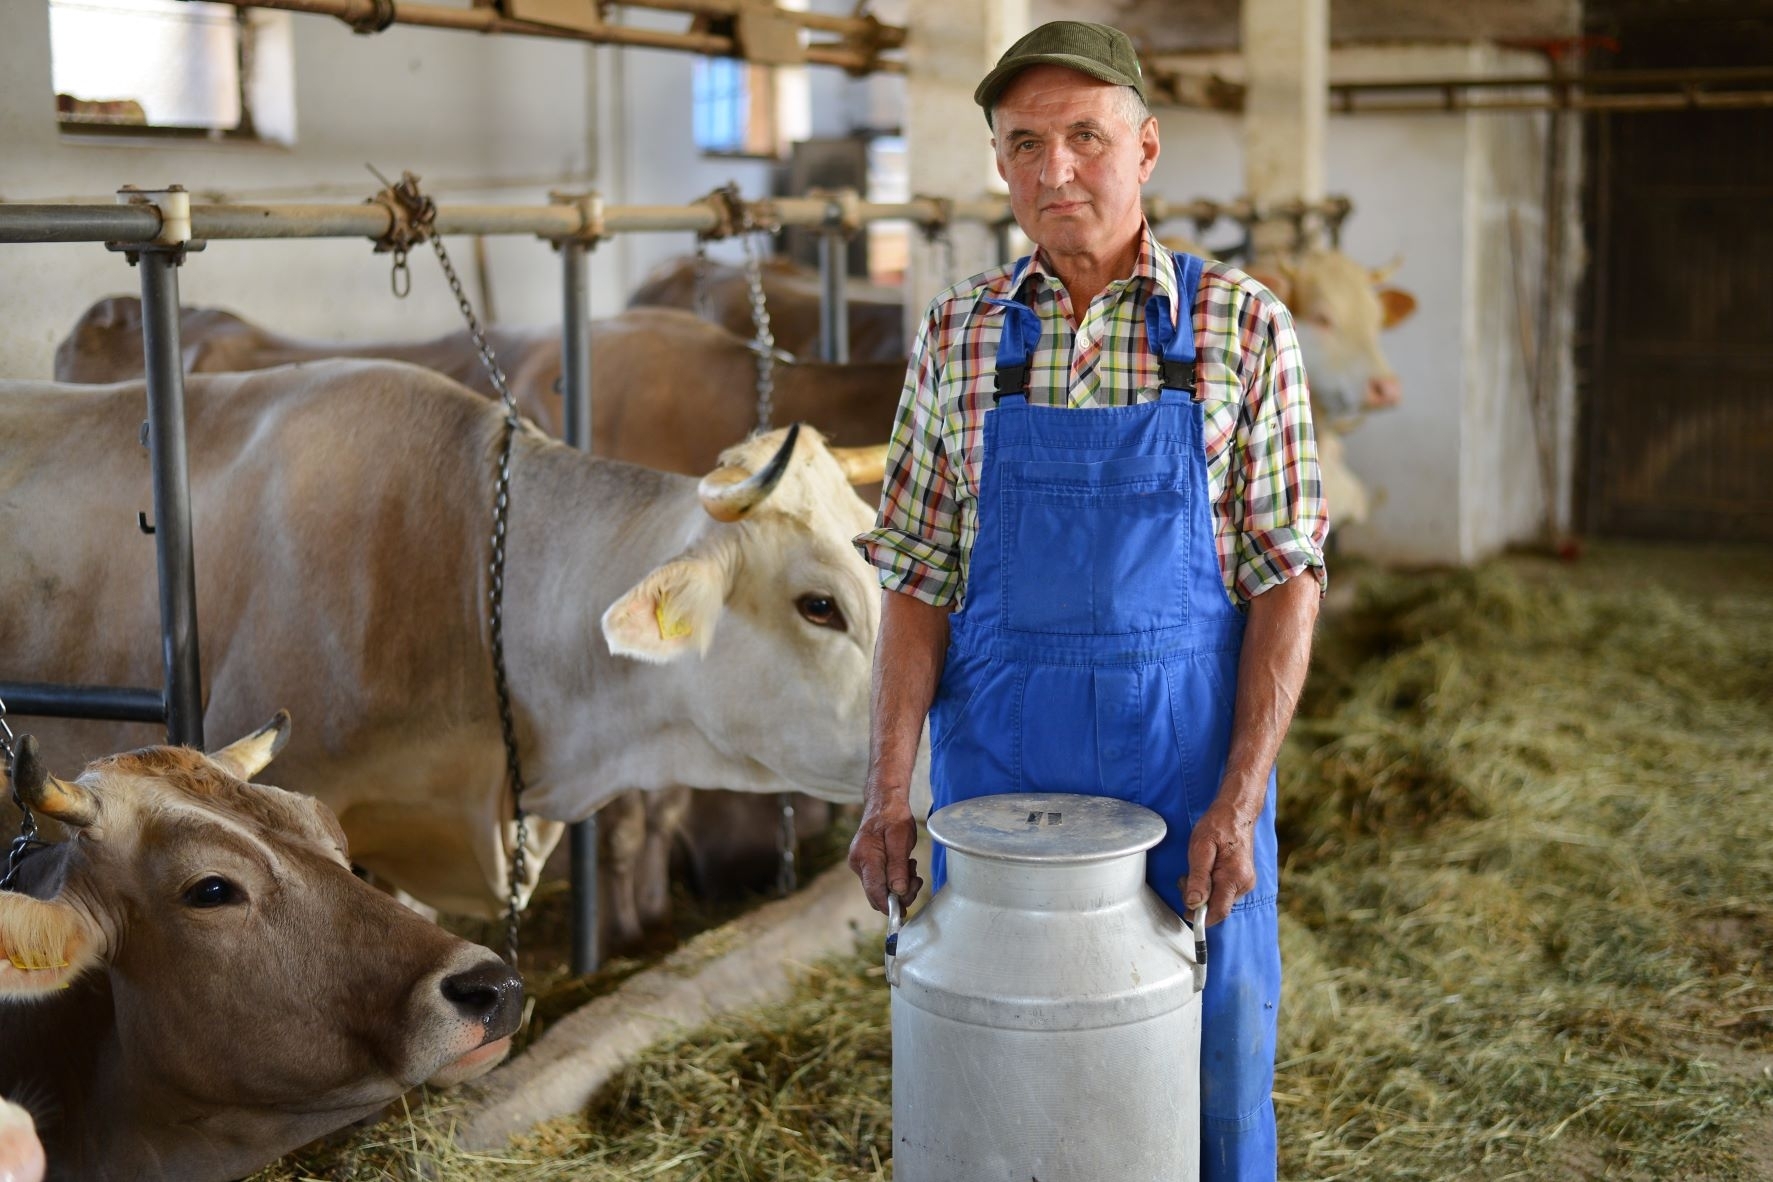 Lenkų ūkininkams apmaudu, kad kaip lietuviai negaus subsidijų už pieną